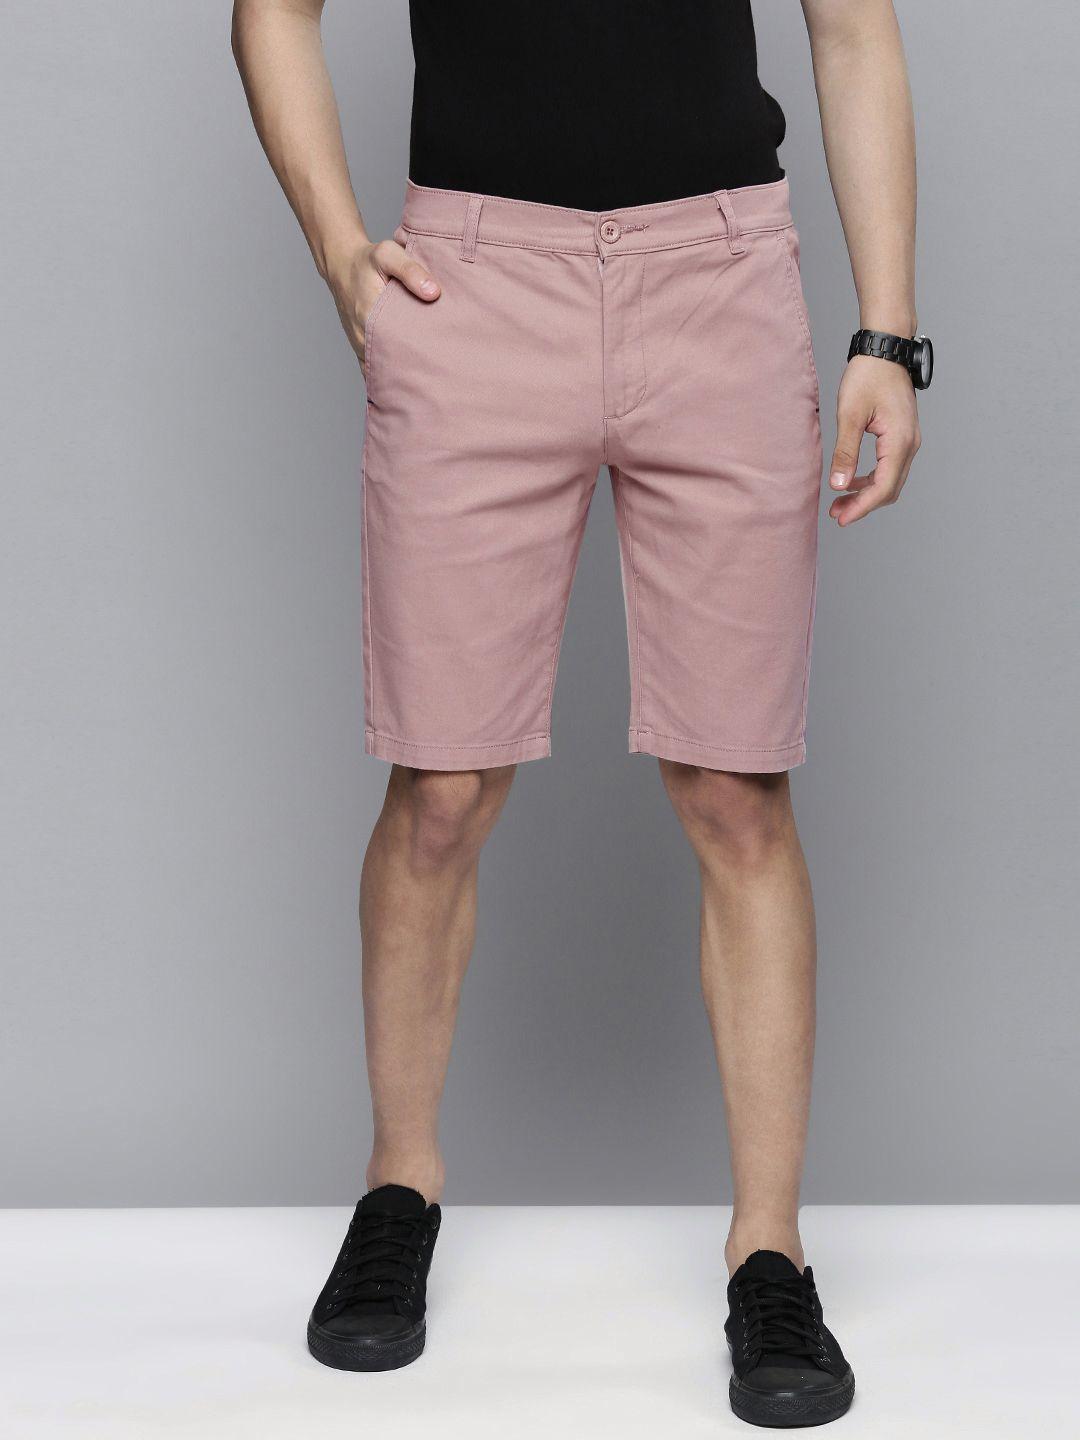 the-indian-garage-co-men-pink-slim-fit-regular-shorts